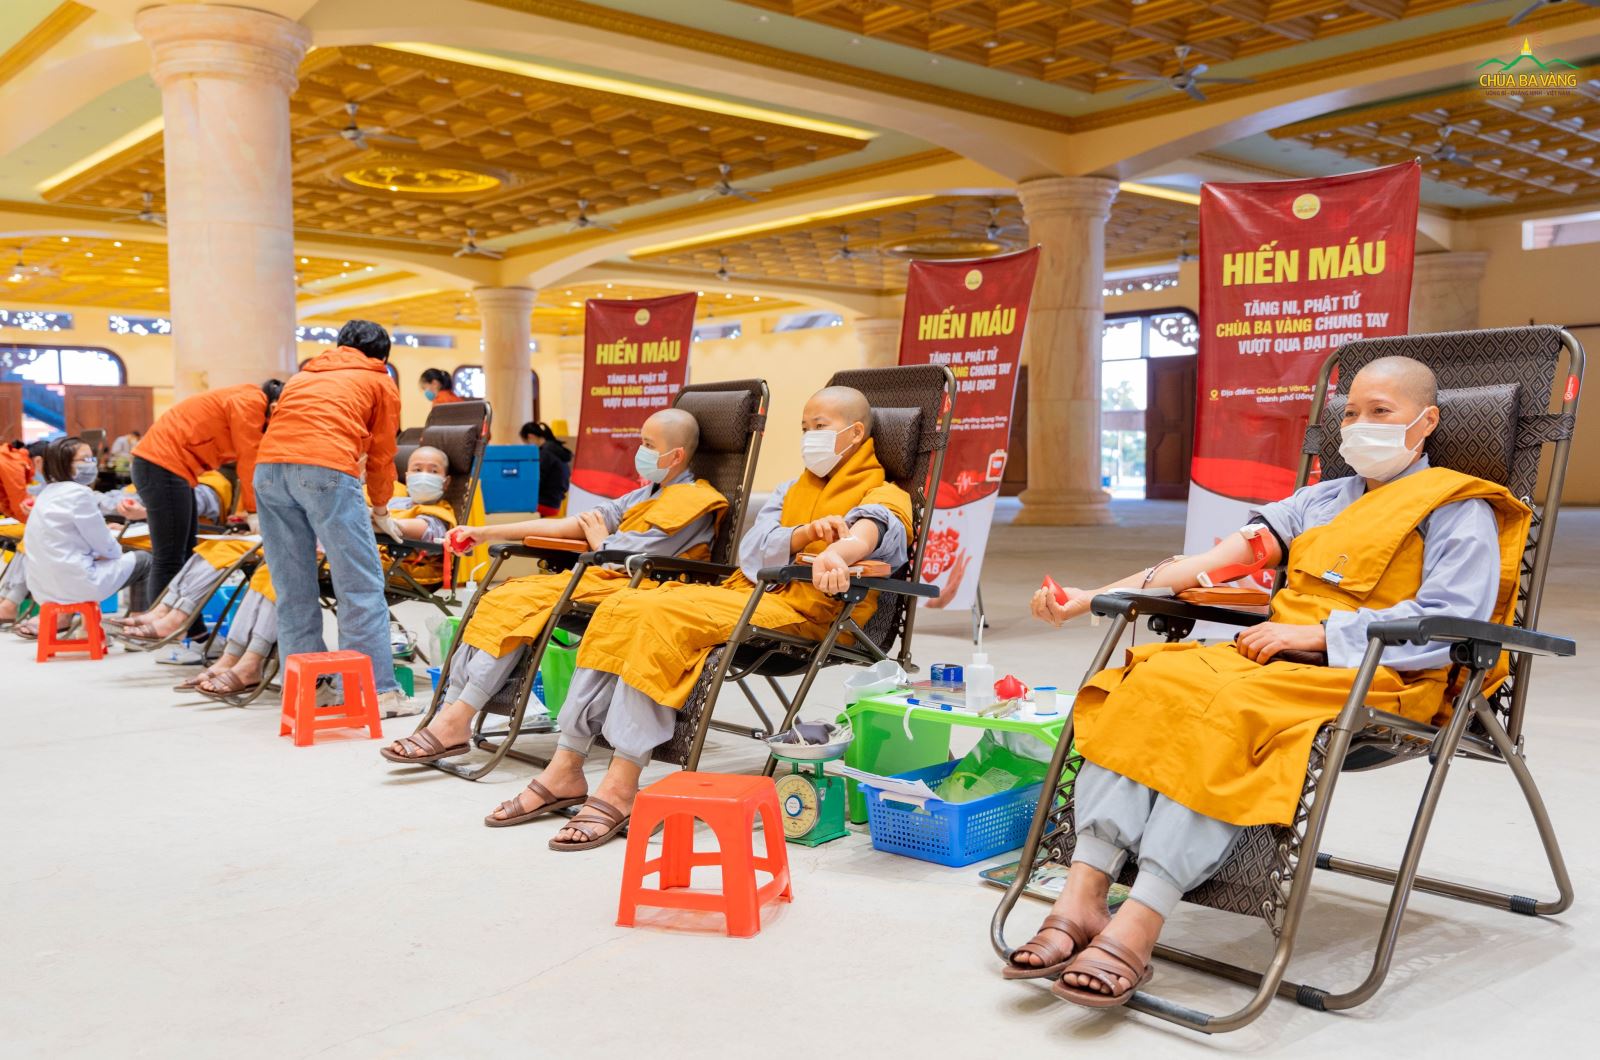 Tăng ni, Phật tử  chùa Ba Vàng tham gia hiến máu cứu người